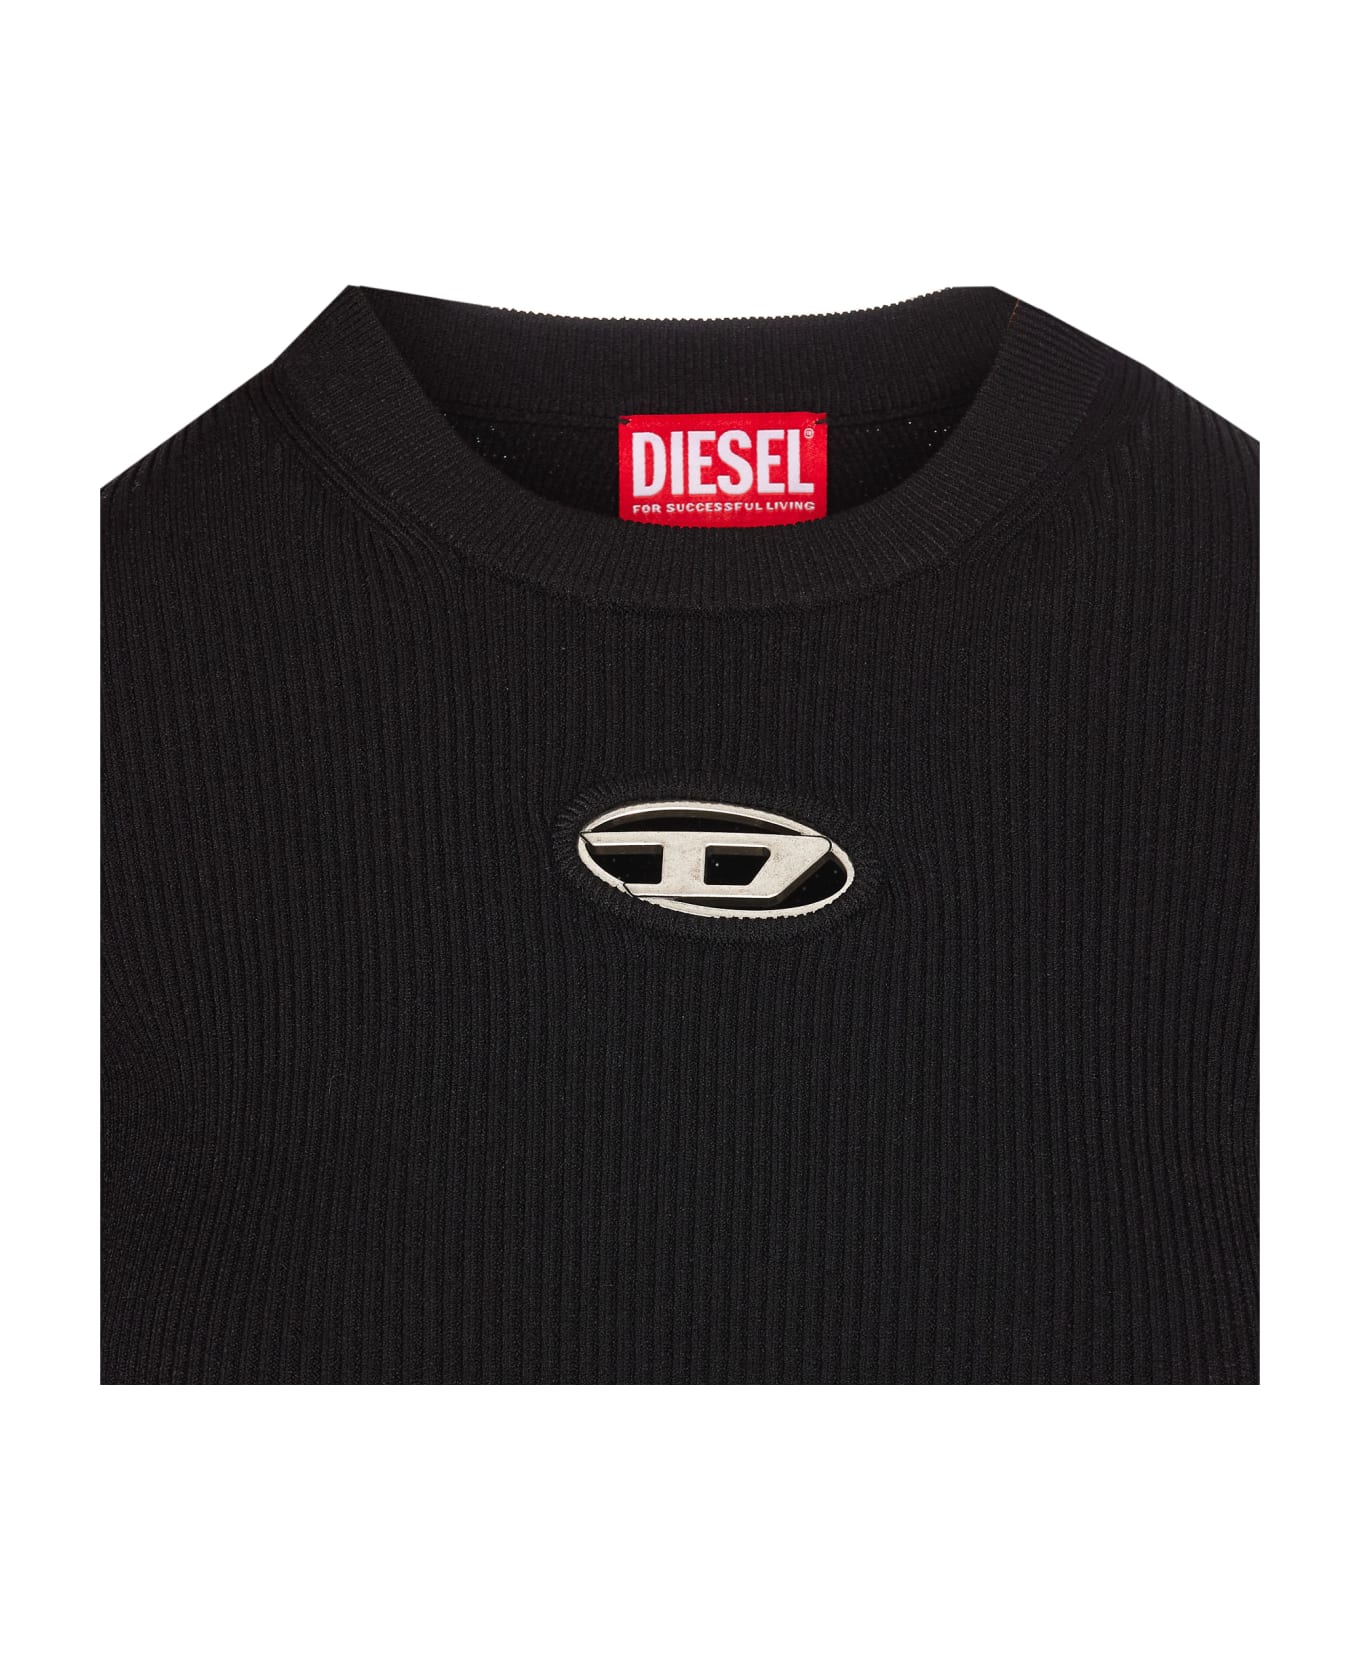 Diesel Logo Long Sleeves Top - Black ニットウェア